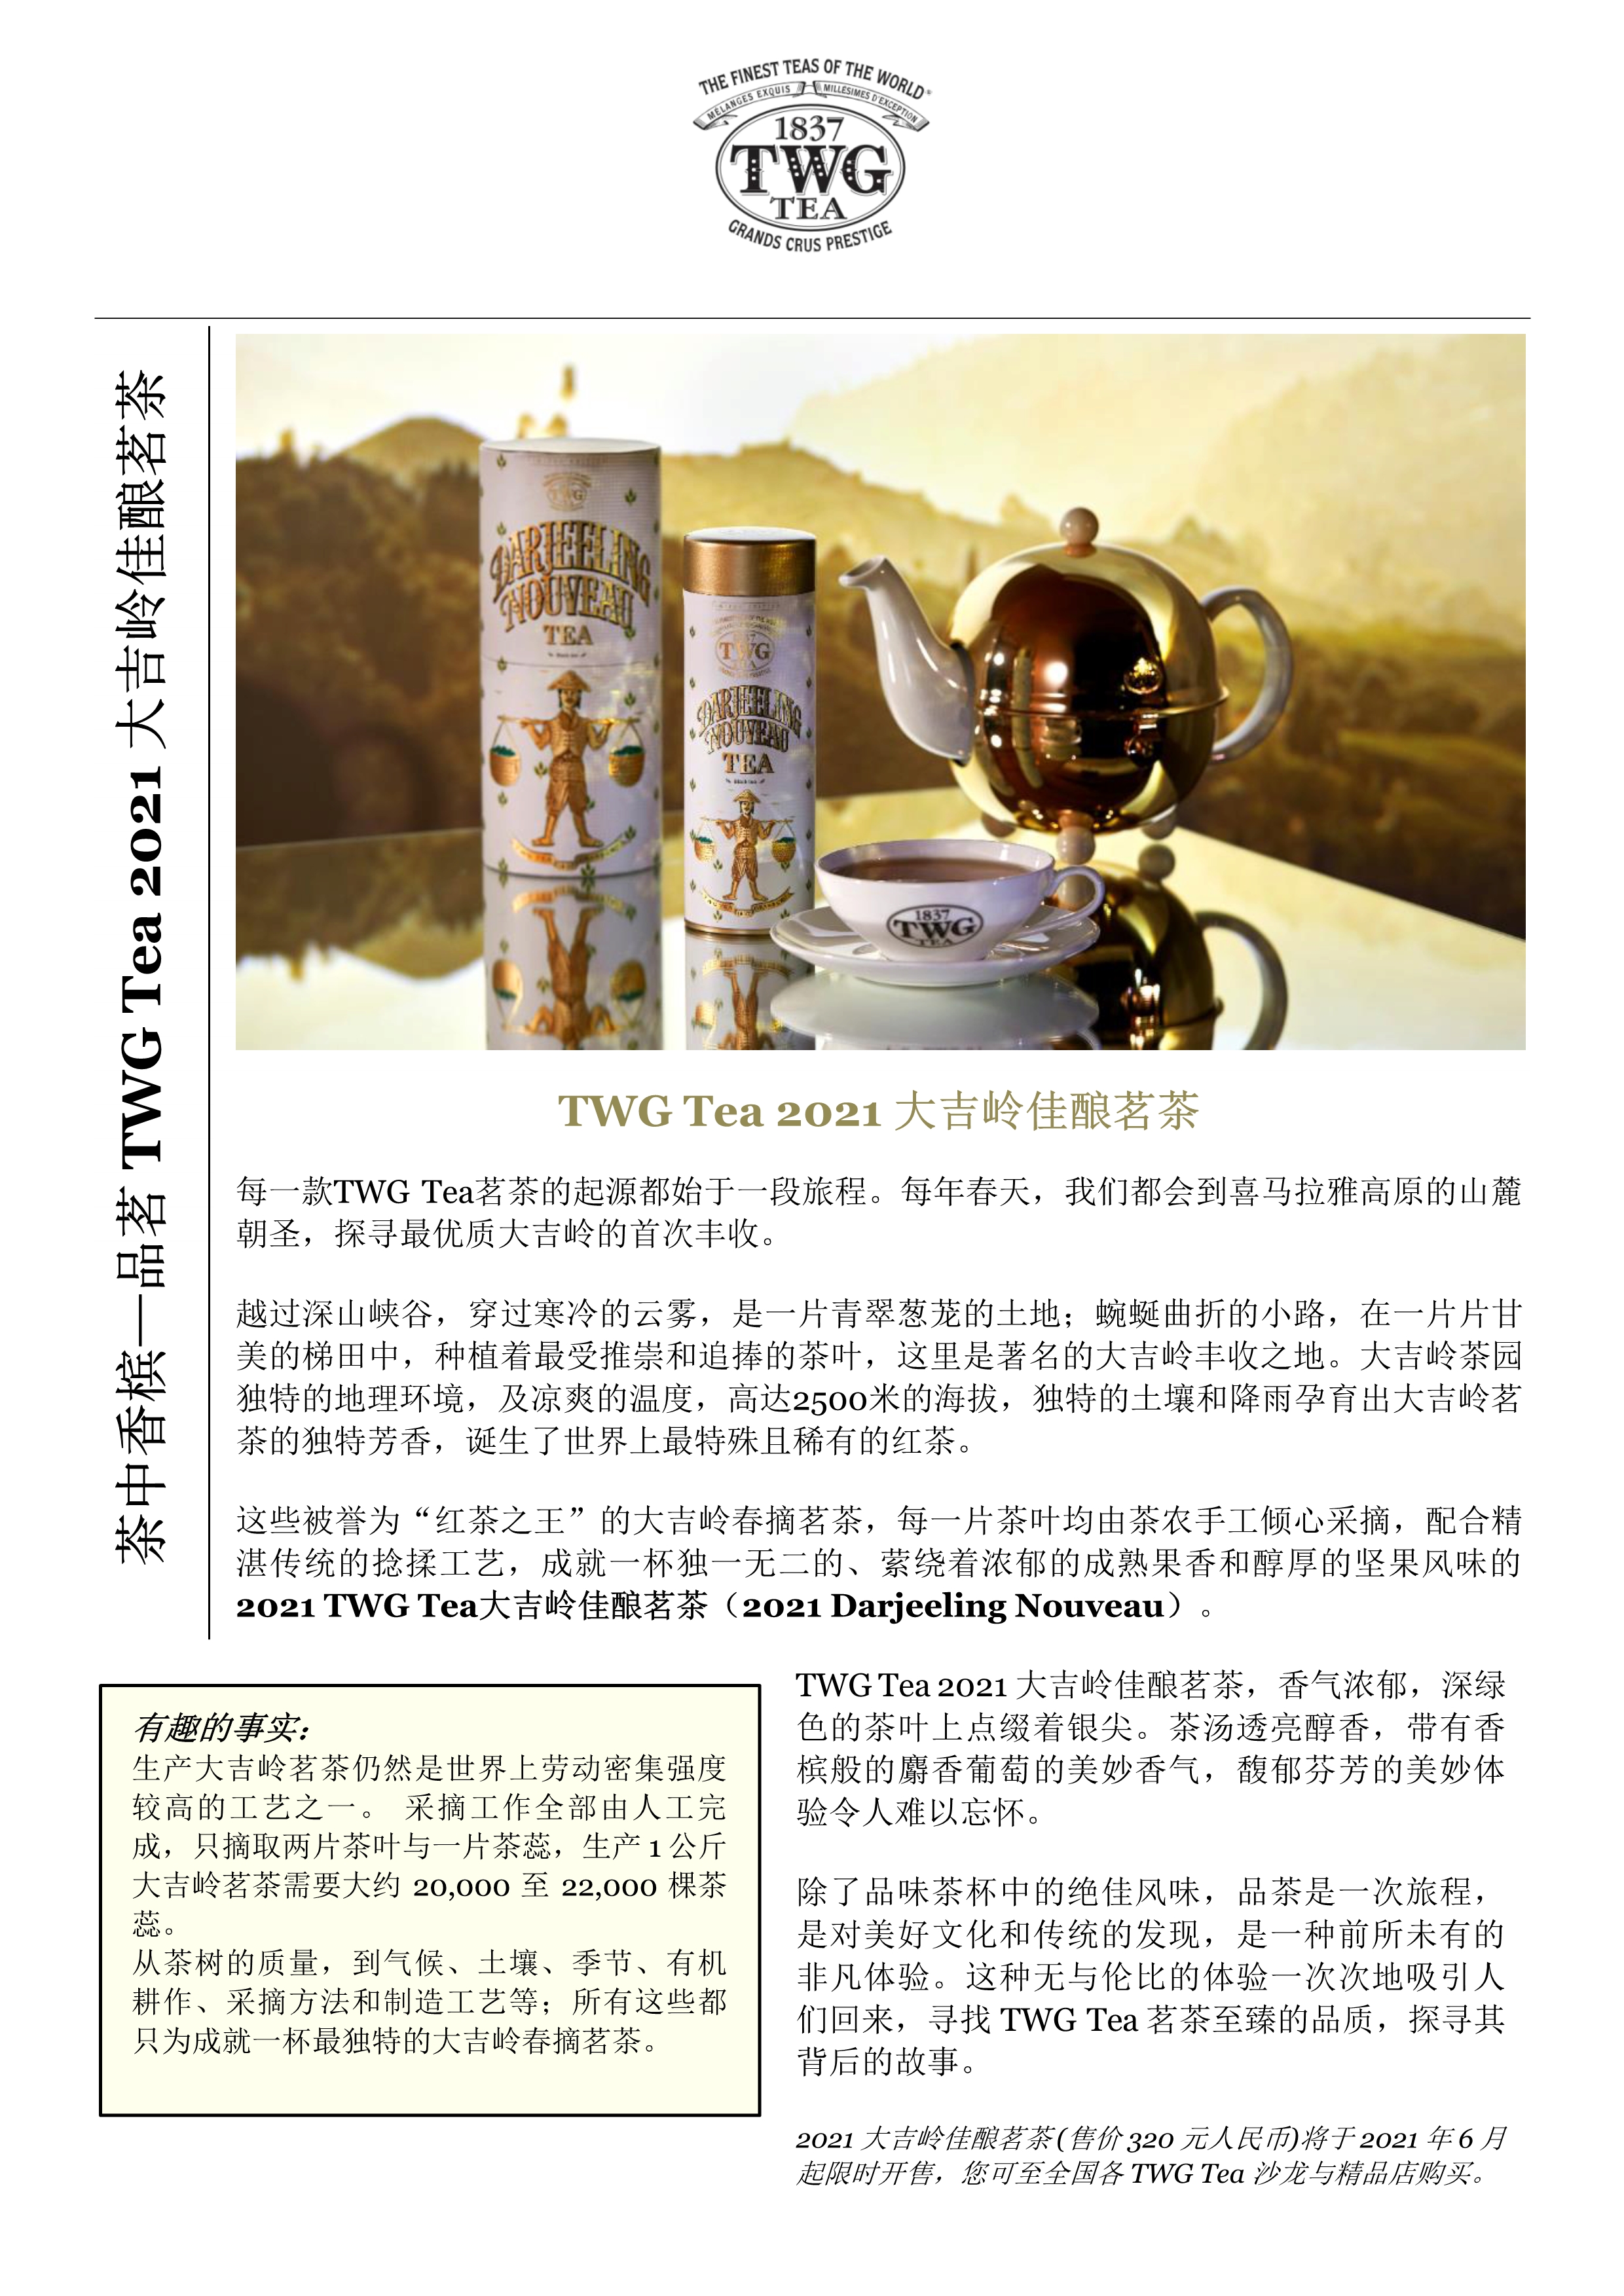 茶中香槟——品茗TWG Tea 2021大吉岭佳酿茗茶